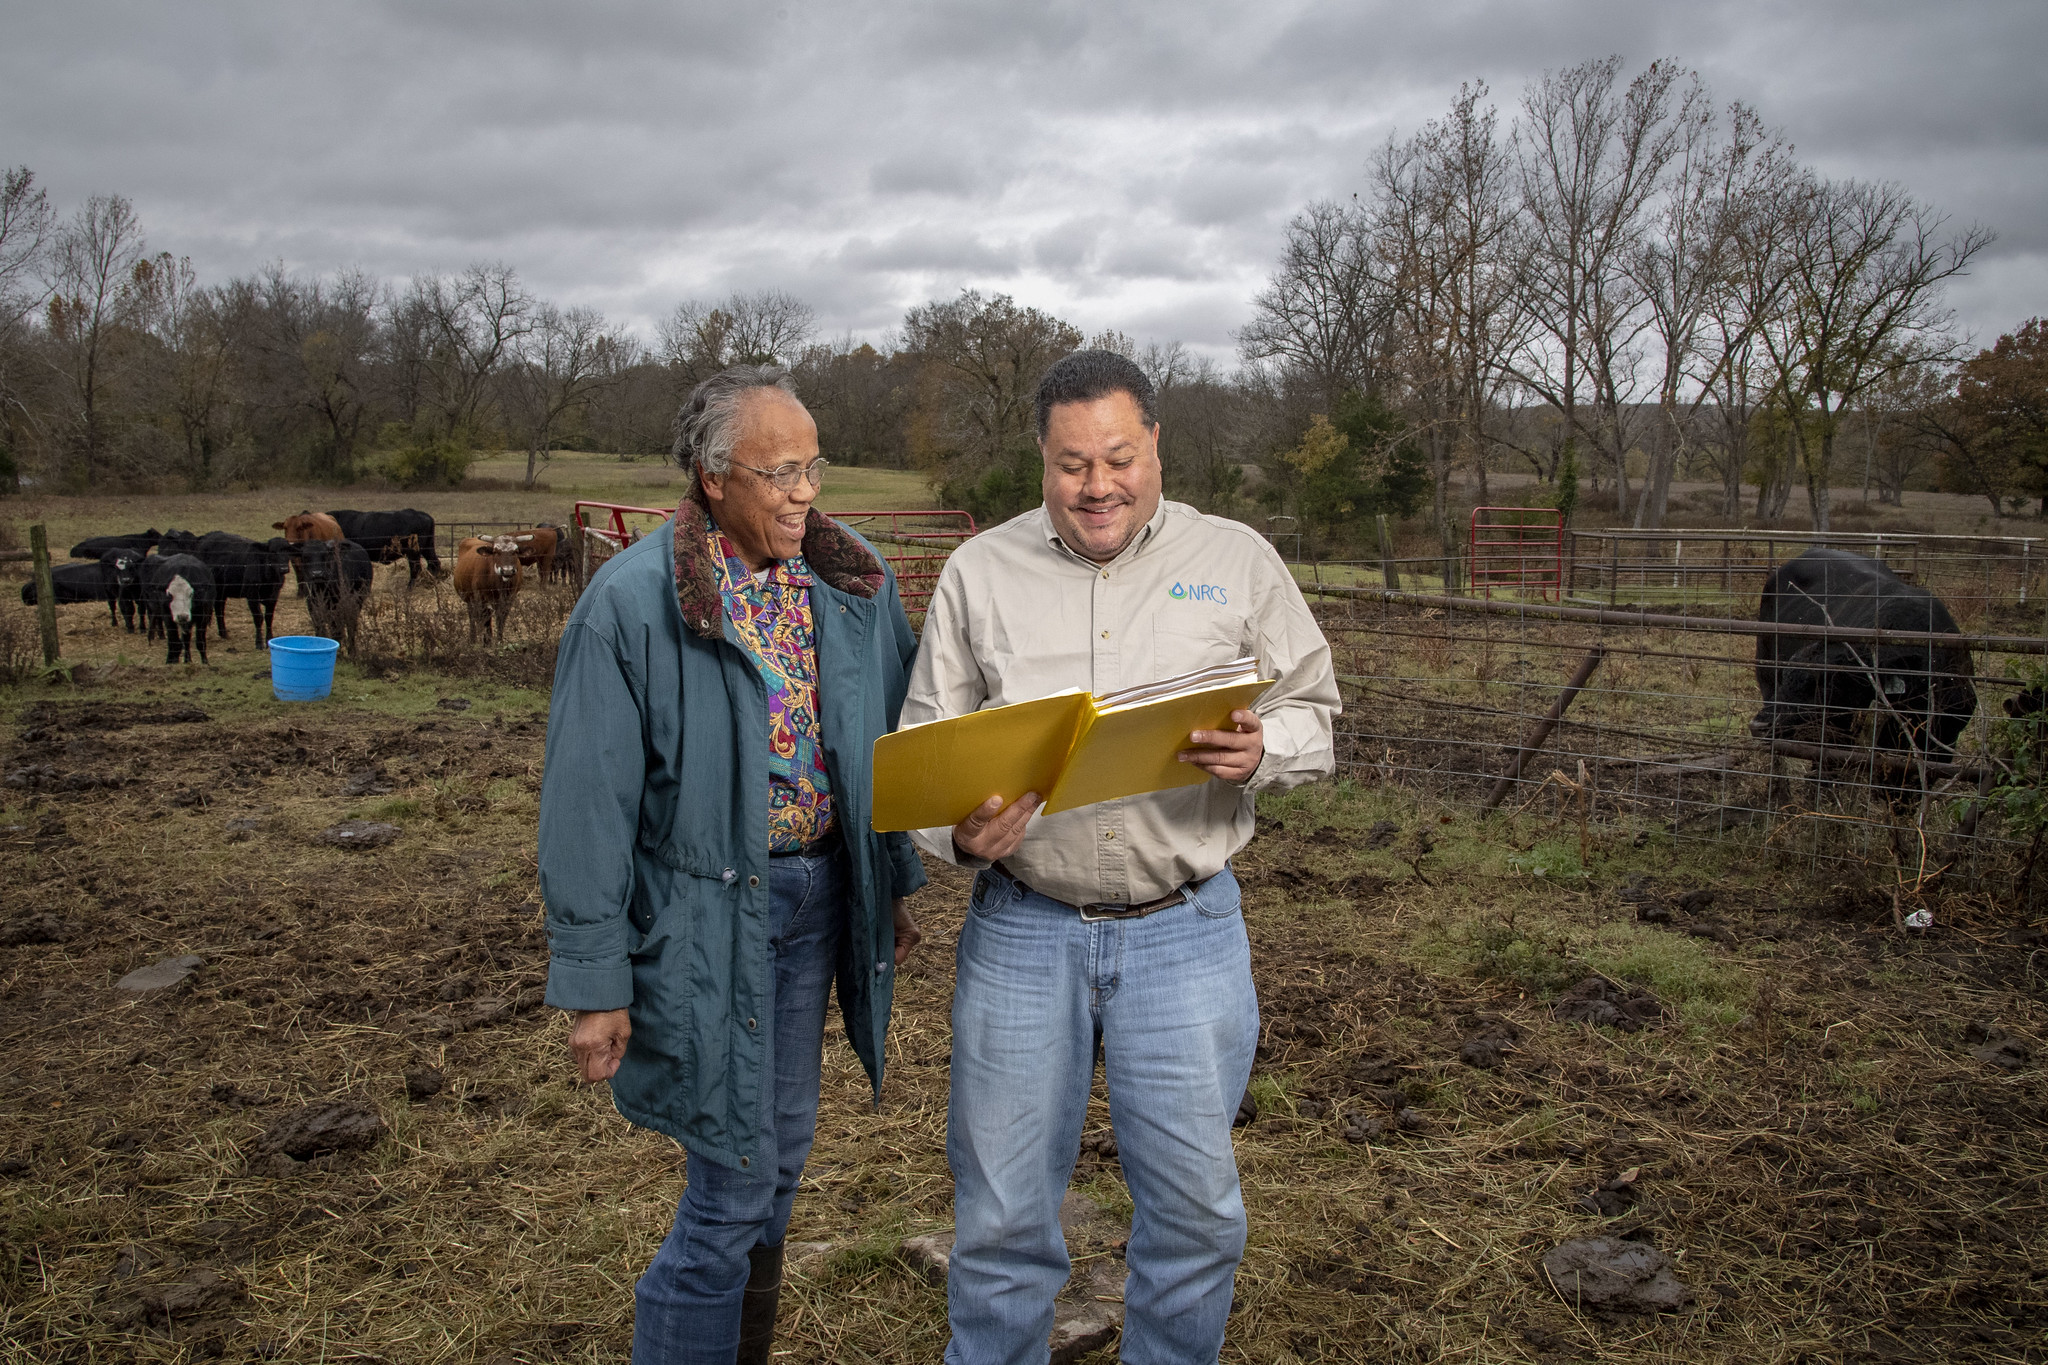 Two farmers talking in a field. PC: USDA